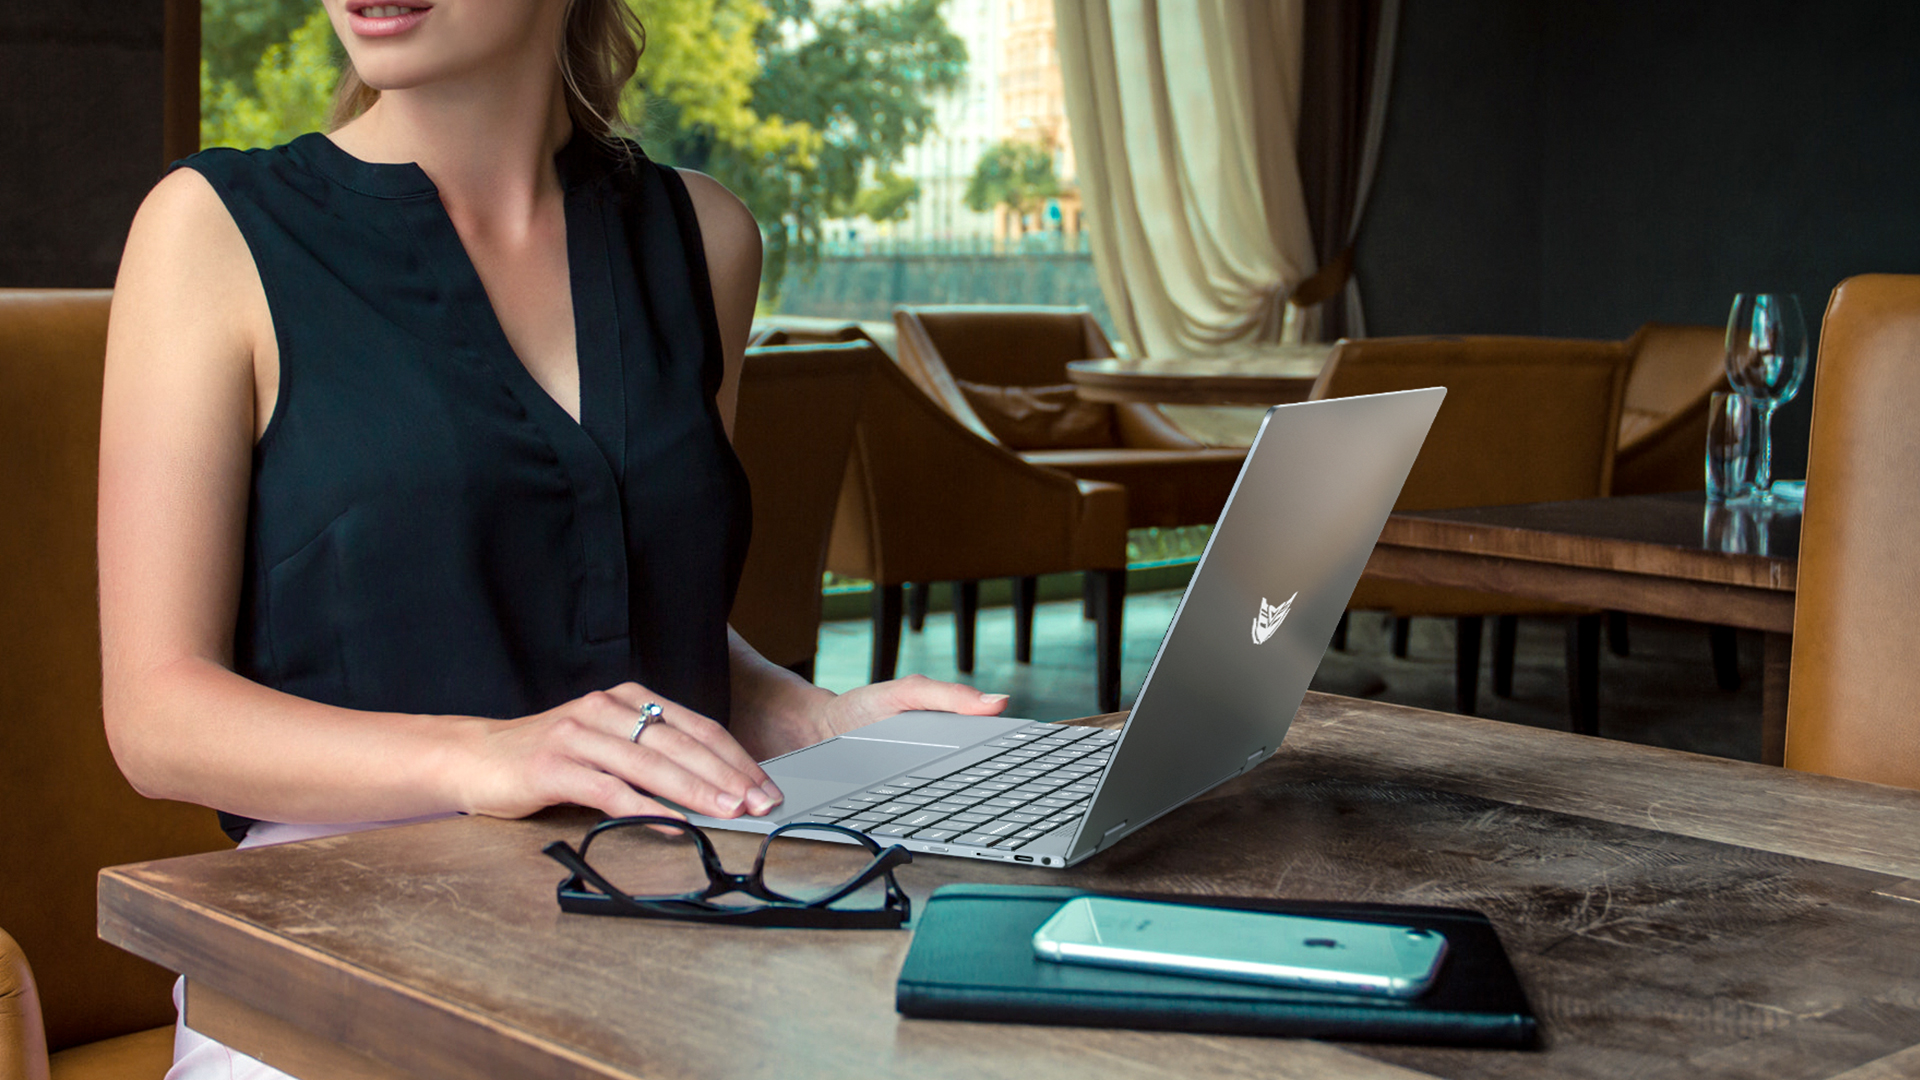 ภาพอธิบายเพิ่มเติมของ BMAX MaxBook Y13 2-in-1 laptop หมุน 360 Yoga องศา จอ 13.3 นิ้ว Multi-touch Ultrabook Windows 10 Pro ลิขสิทธิ์แท้ Intel Celeron Quad-Core 8GB RAM 256GB SSD โน๊คบุ๊ค